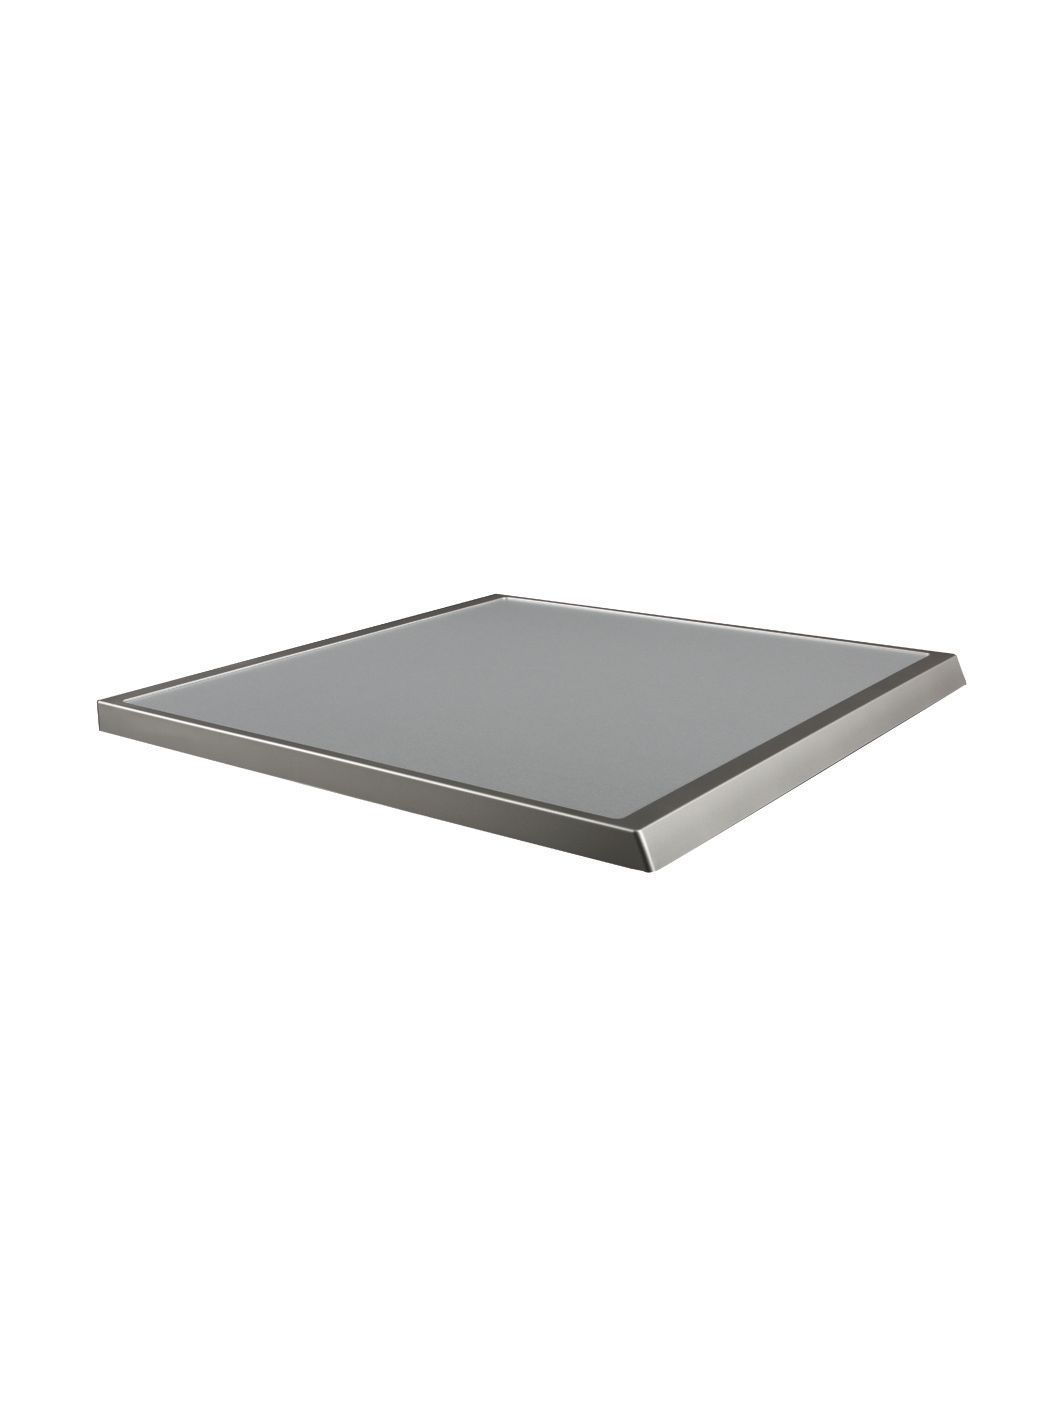 Tischplatte Silber,640B, SE,39171, dekorplatin V2 (KD-00145366) von BSH